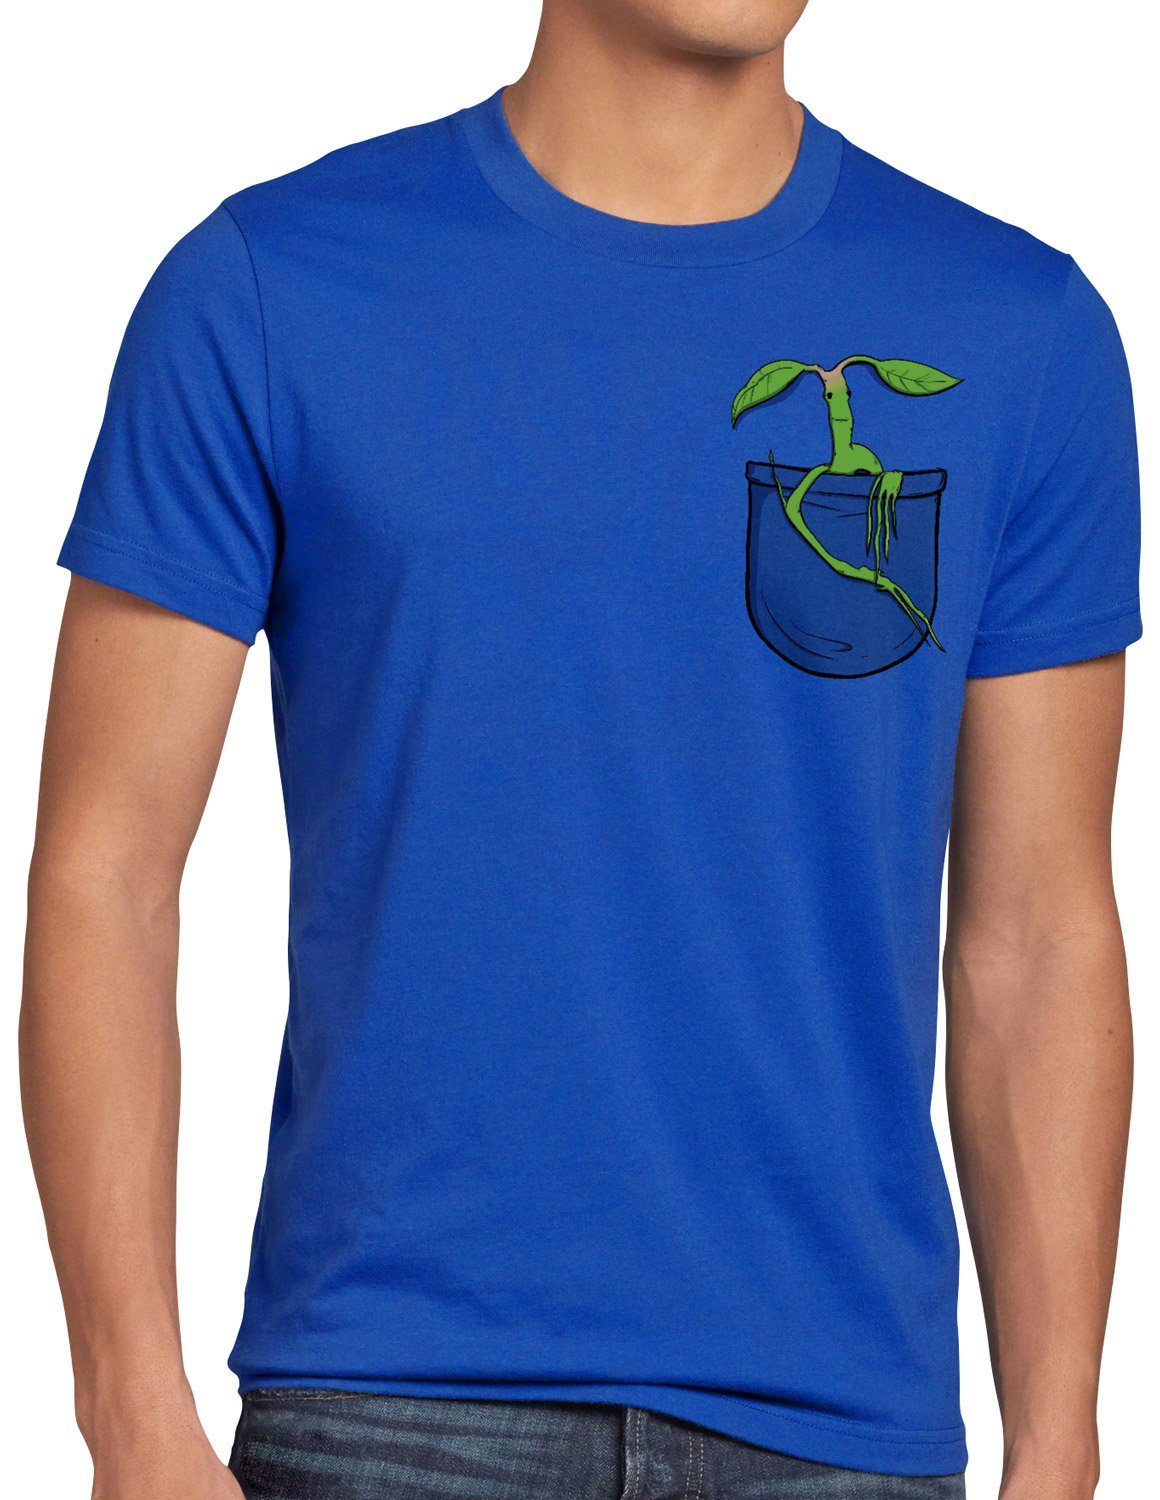 blau baumwächter style3 Brusttasche T-Shirt Print-Shirt tierwesen Bowtuckle Herren